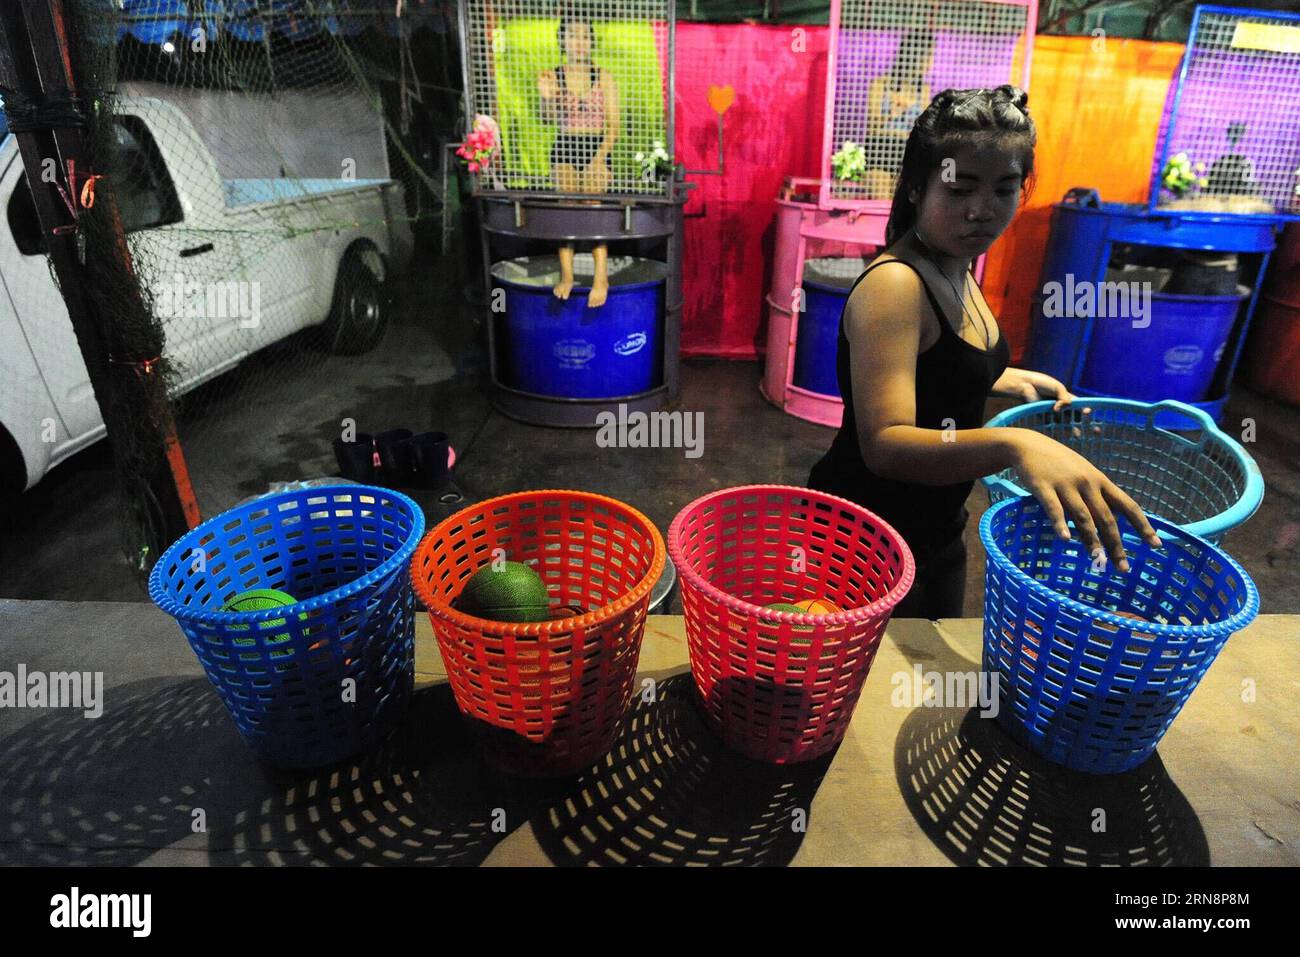 (151101) -- BANGKOK, 1. November 2015 -- Ein Verkäufer bereitet Bälle vor, während Dunk Tank Girls in Bangkok, Thailand, 1. November 2015 hinter dem Netz sitzen. Ein Wassertank besteht aus einem Wassertank, über dem ein Freiwilliger auf einem zusammenfallenden Sitz sitzt. Wenn ein Ball auf ein Ziel trifft, bricht der Sitz zusammen und taucht die Person ins Wasser. ) THAILAND-BANGKOK-DUNK TANK GIRL RachenxSageamsak PUBLICATIONxNOTxINxCHN Bangkok Nov 1 2015 ein Verkäufer bereitet Bälle vor, während Dunk Tank Girls im Bangkok Thai Country sitzen 1 2015 ein Dunk Tank besteht aus einem Tank mit Wasser, über dem ein Freiwilliger AUF einem zusammenfallenden Sitz sitzt, wenn ein Bal Stockfoto